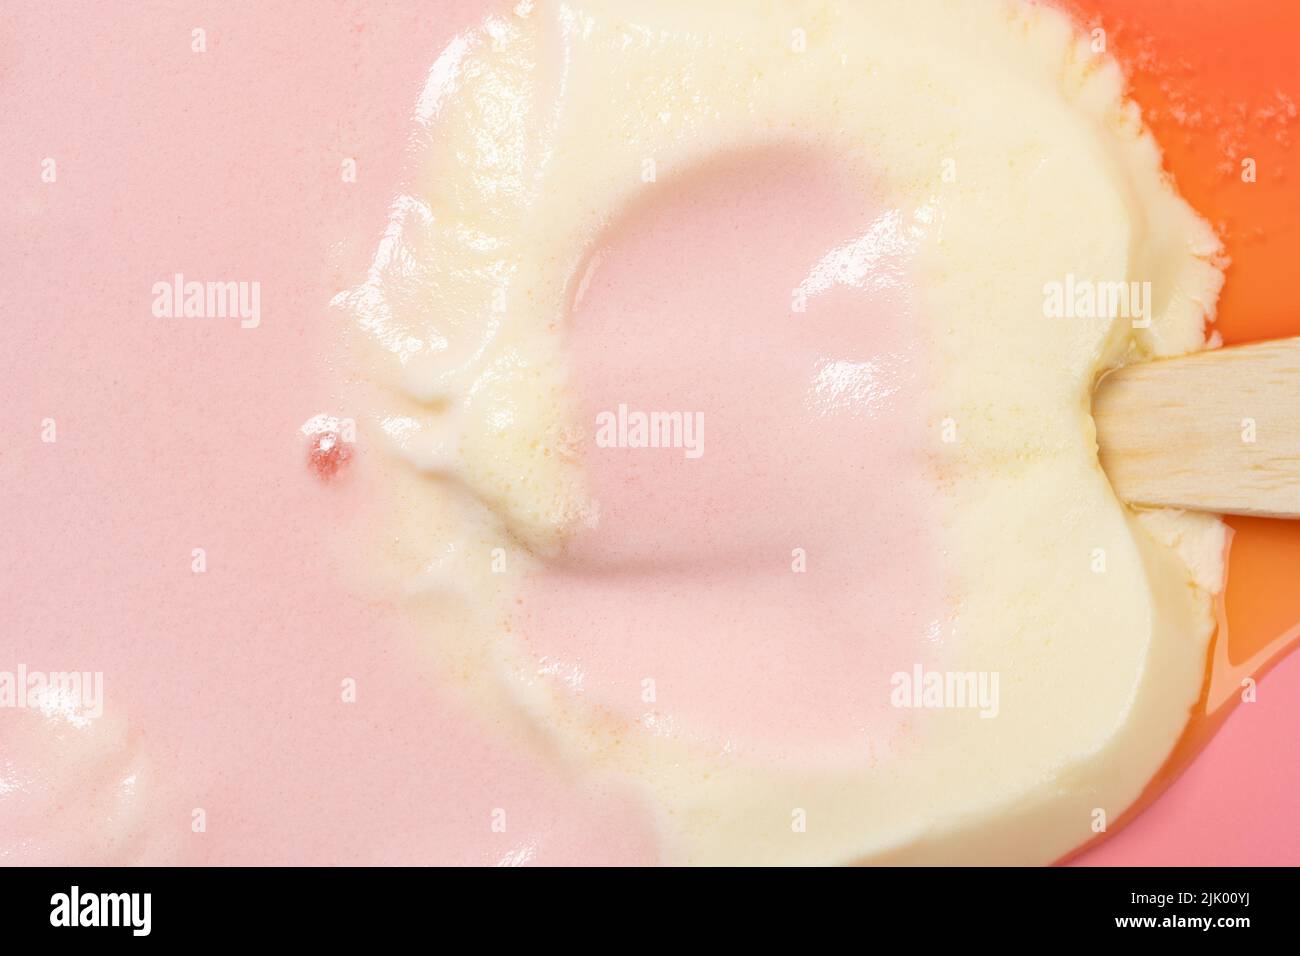 vista superior gatos forma pata melocotón y queso sabor paleta derretida en rosa primer plano Foto de stock